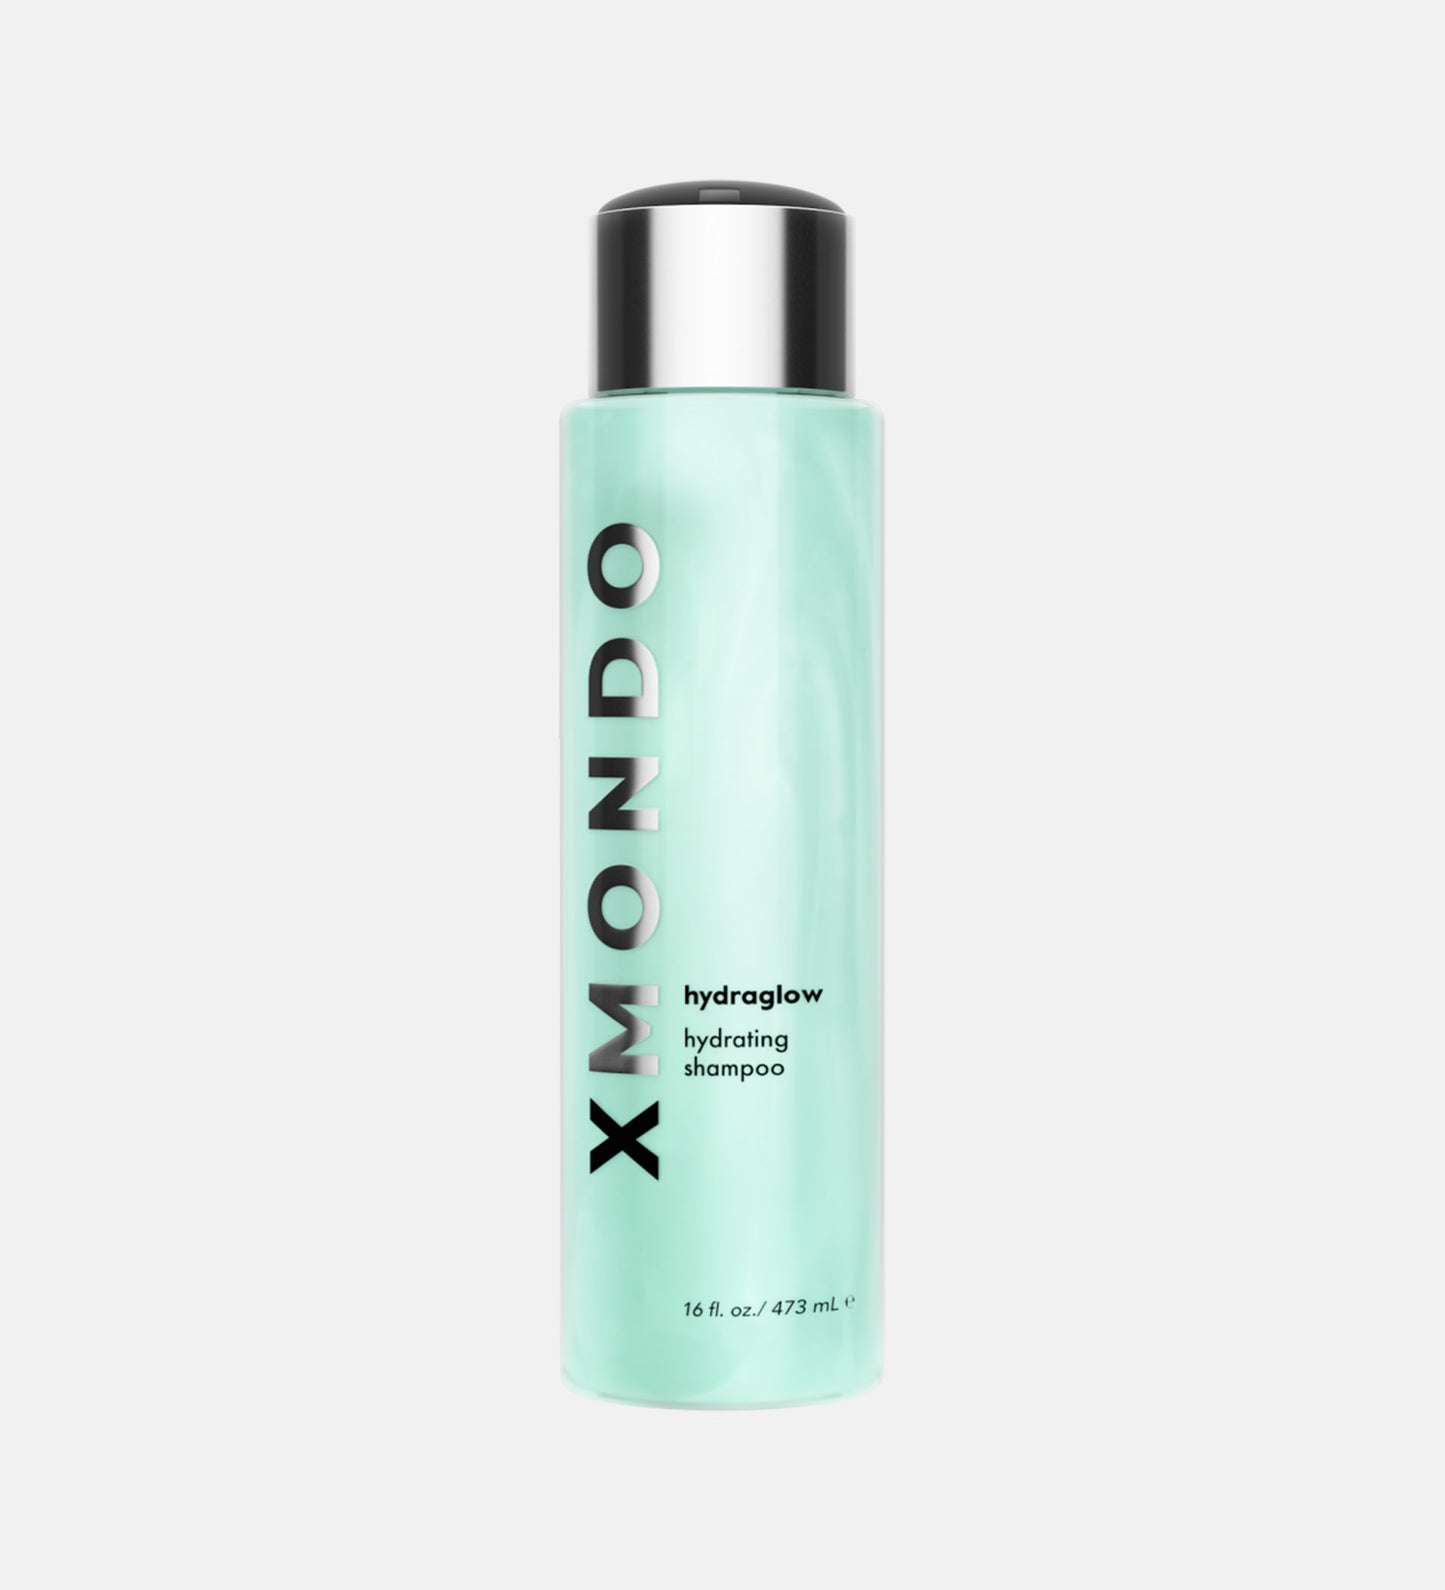 Hydraglow 16oz Hydrating Shampoo